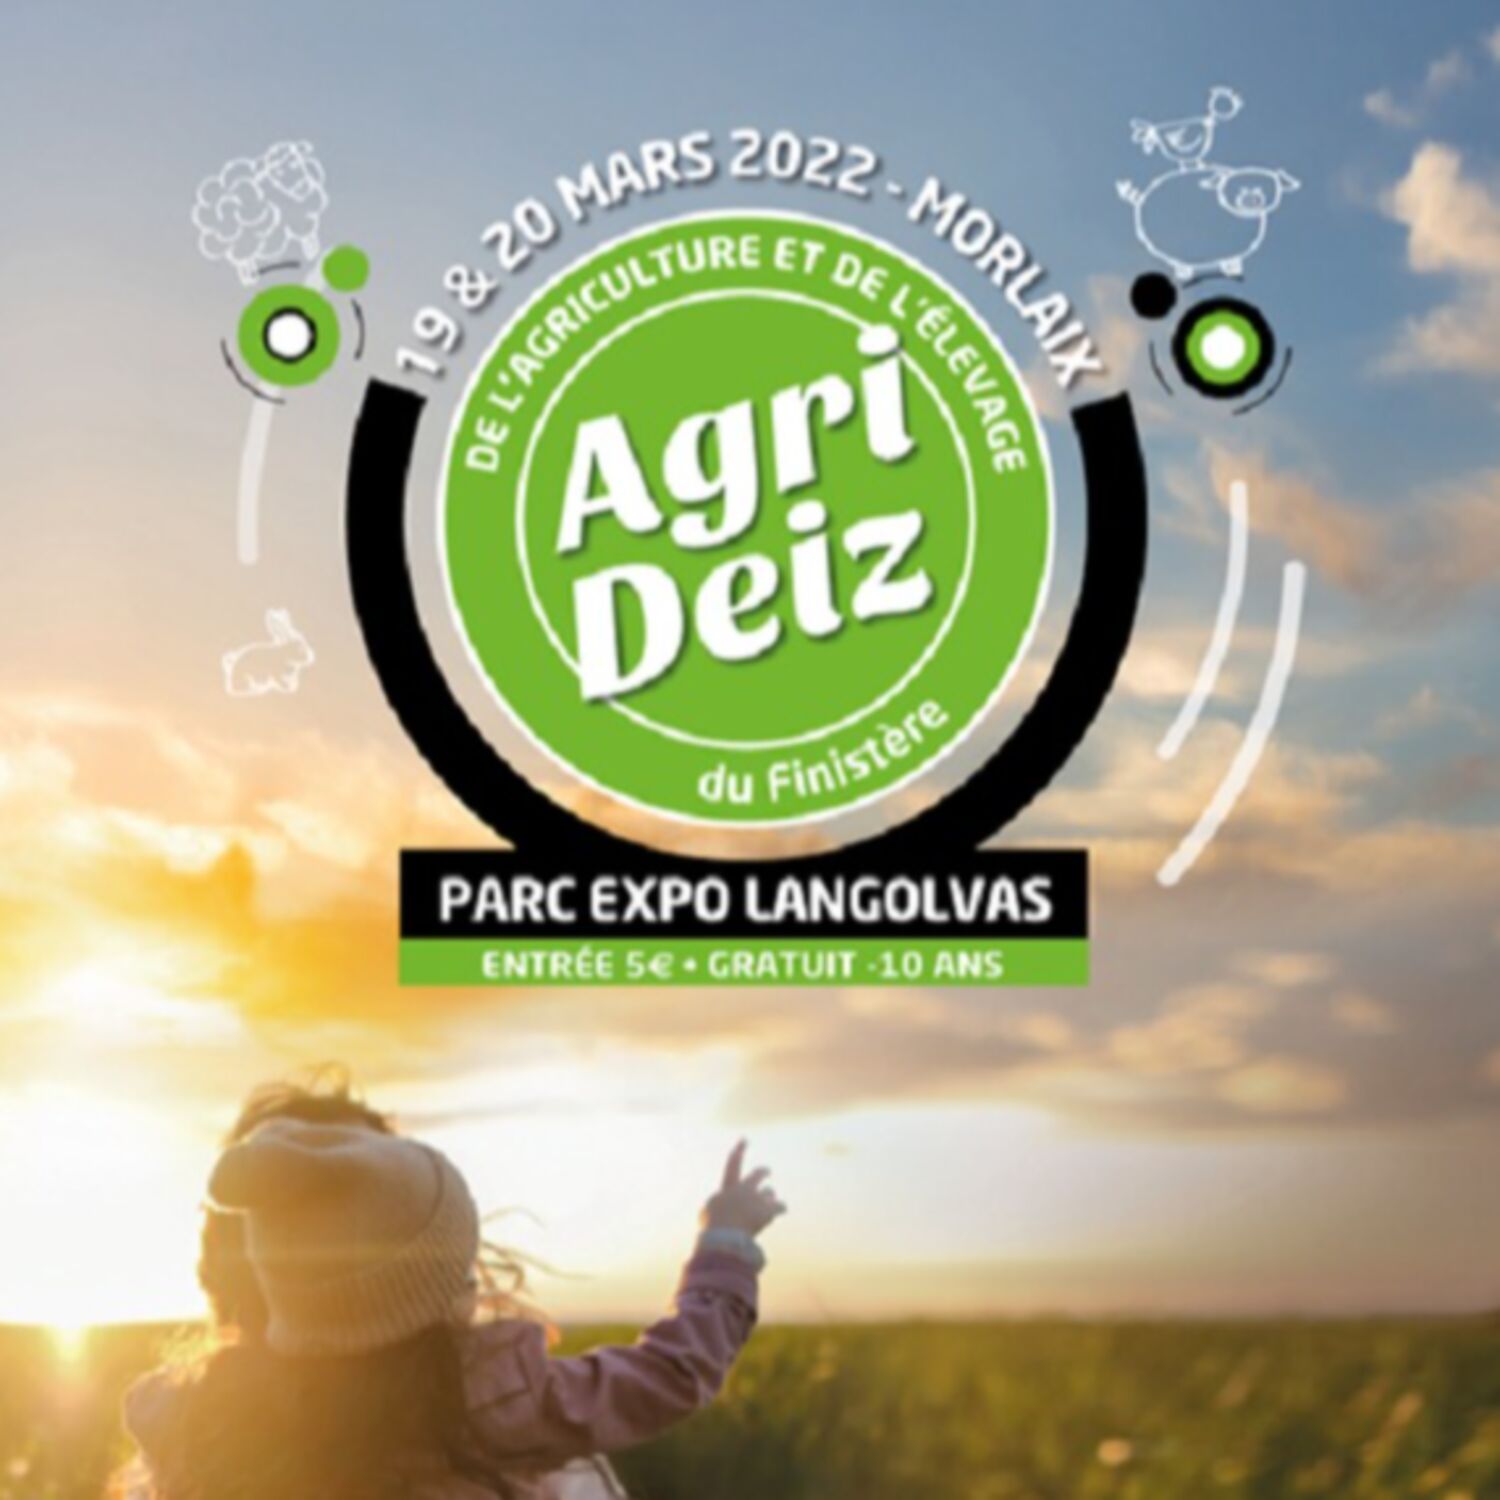 Festival de l'agriculture et de l'élevage Agri Deiz à Morlaix les 19 et 20 mars